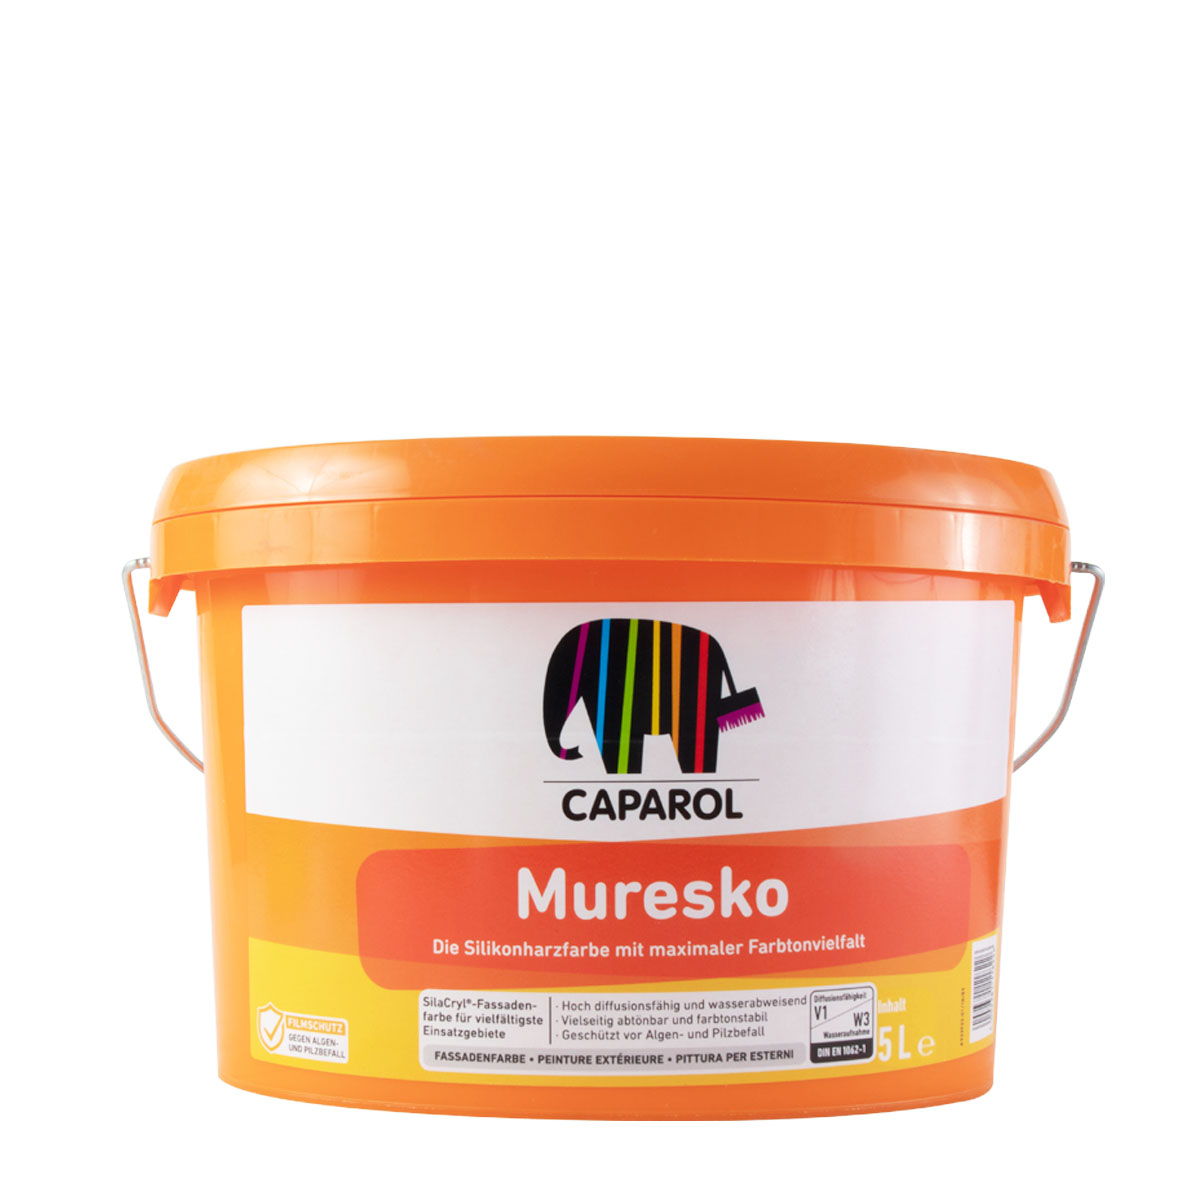 Caparol Muresko SilaCryl 5L MIX PG A , Siliconharz-Fassadenfarbe